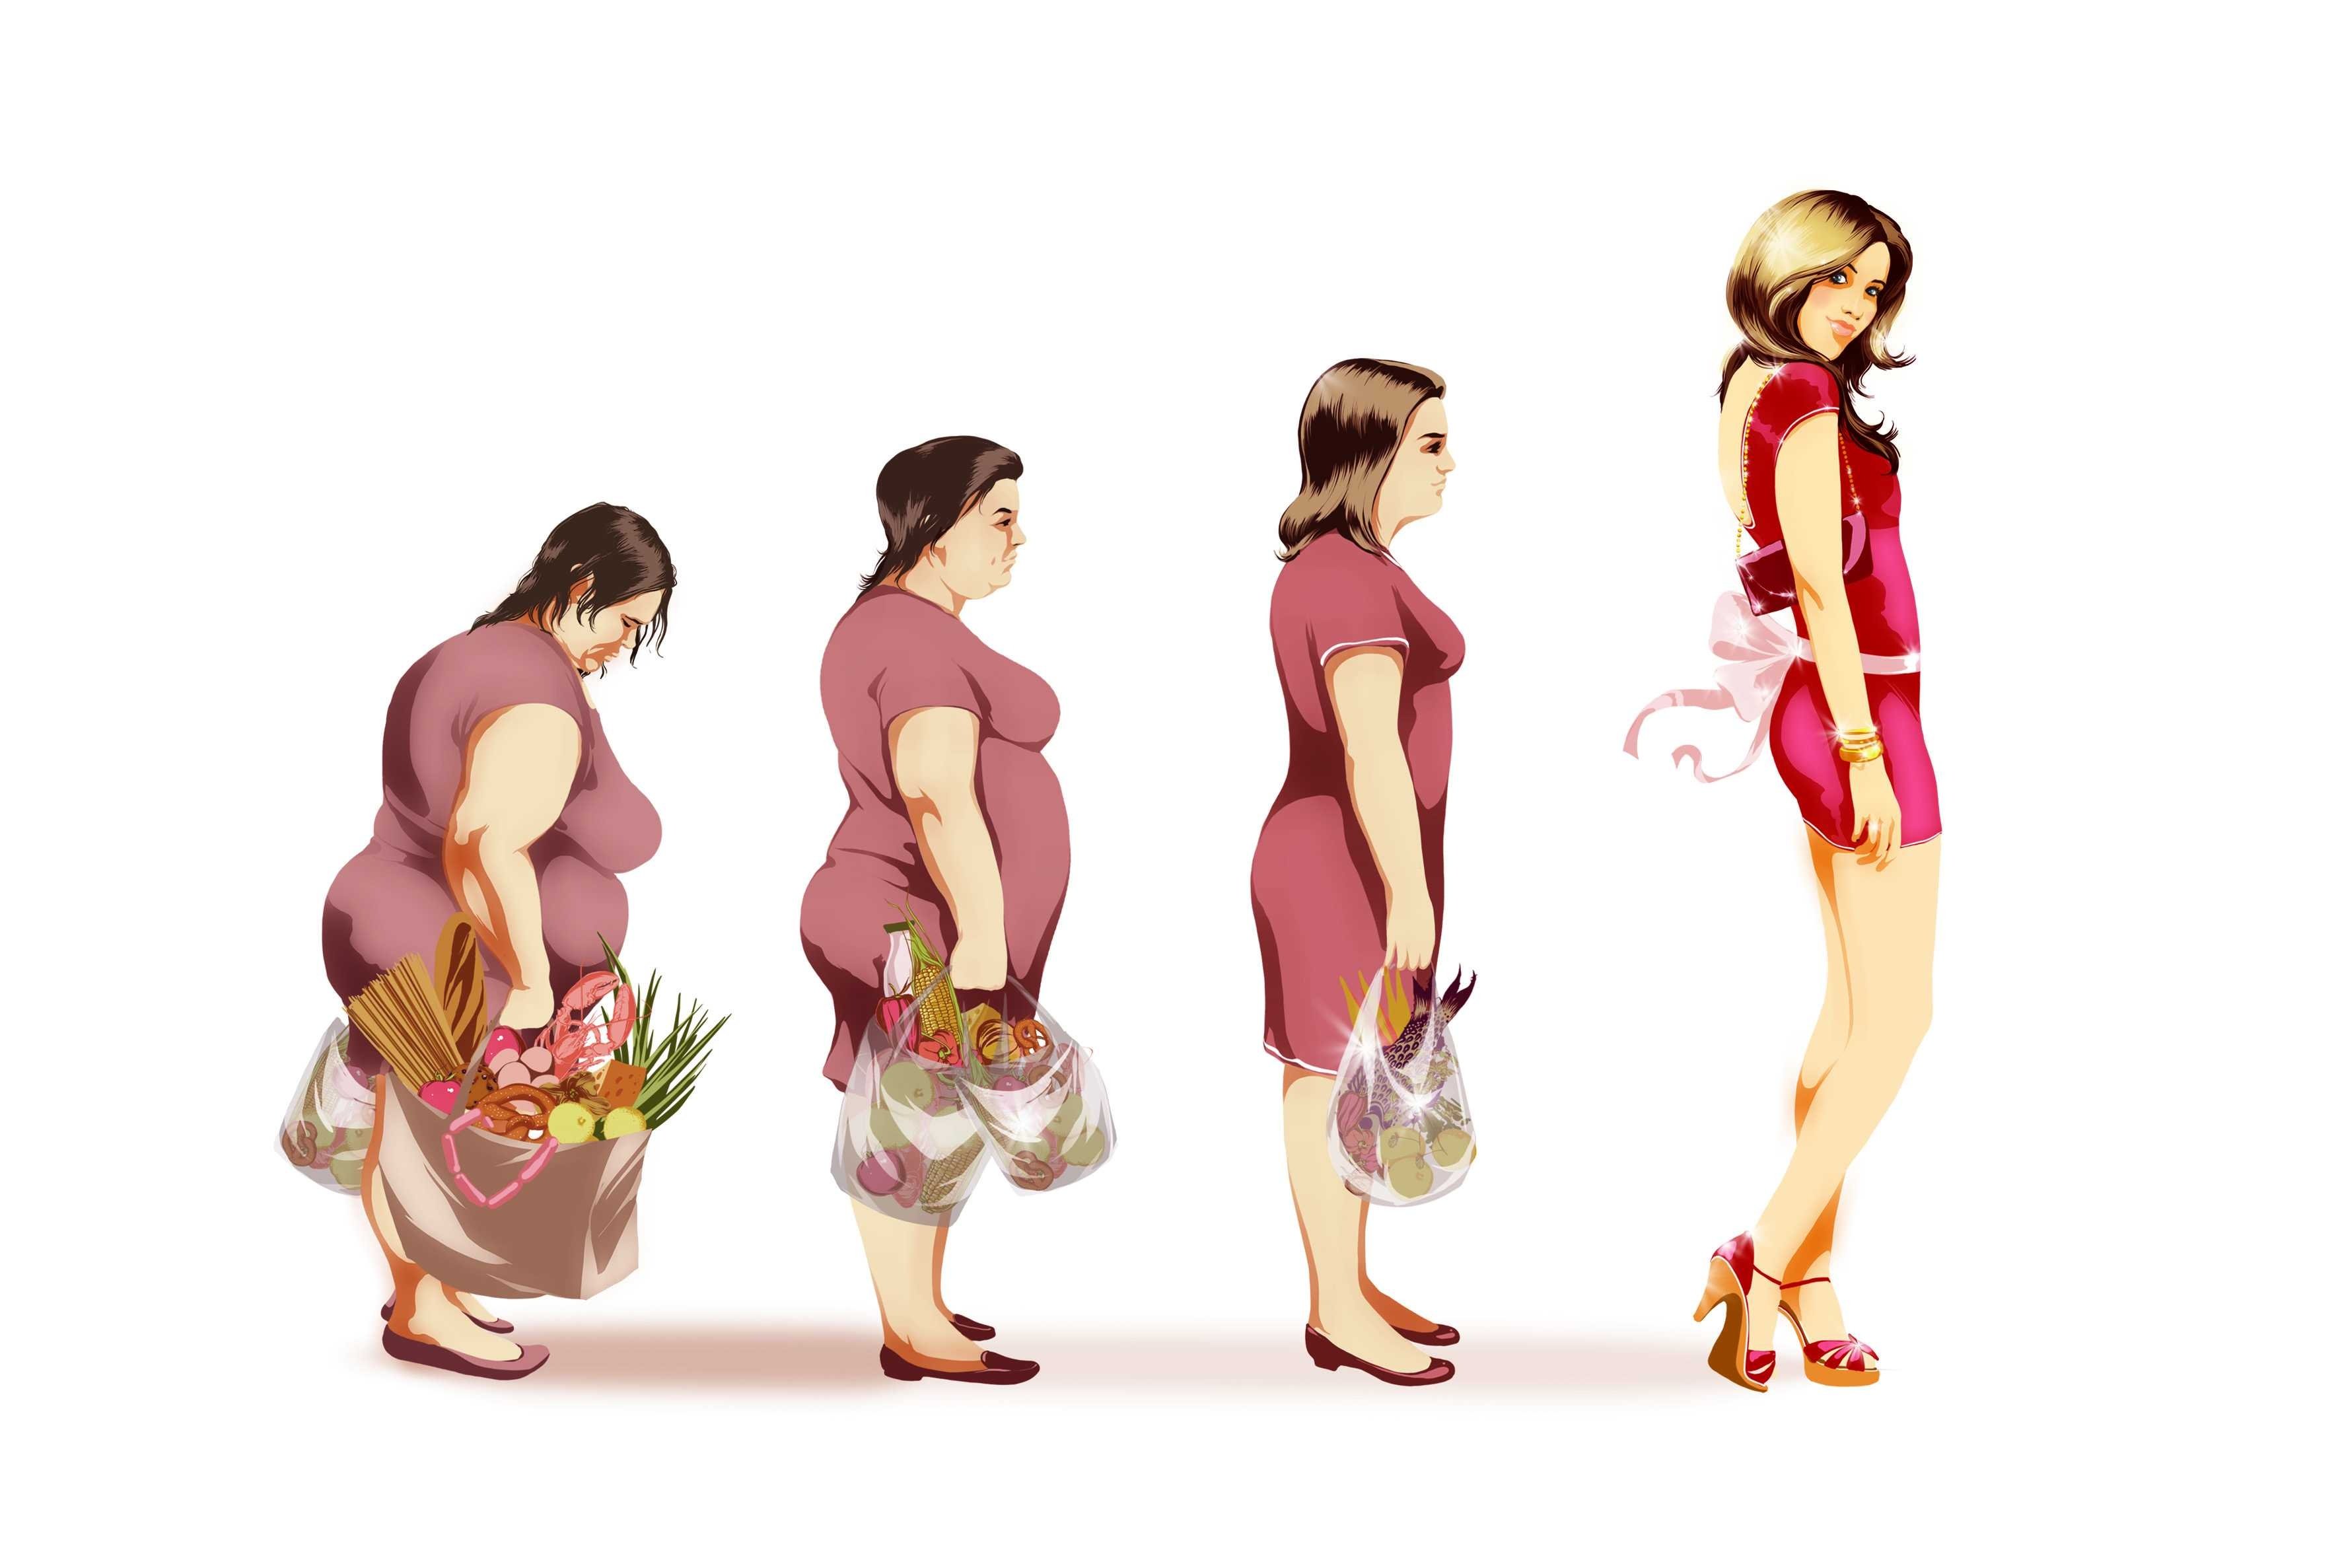 Man transformation women. Эволюция женщины. Мотиваторы для худеющих. Мотивация для похудения. Женская трансформация.